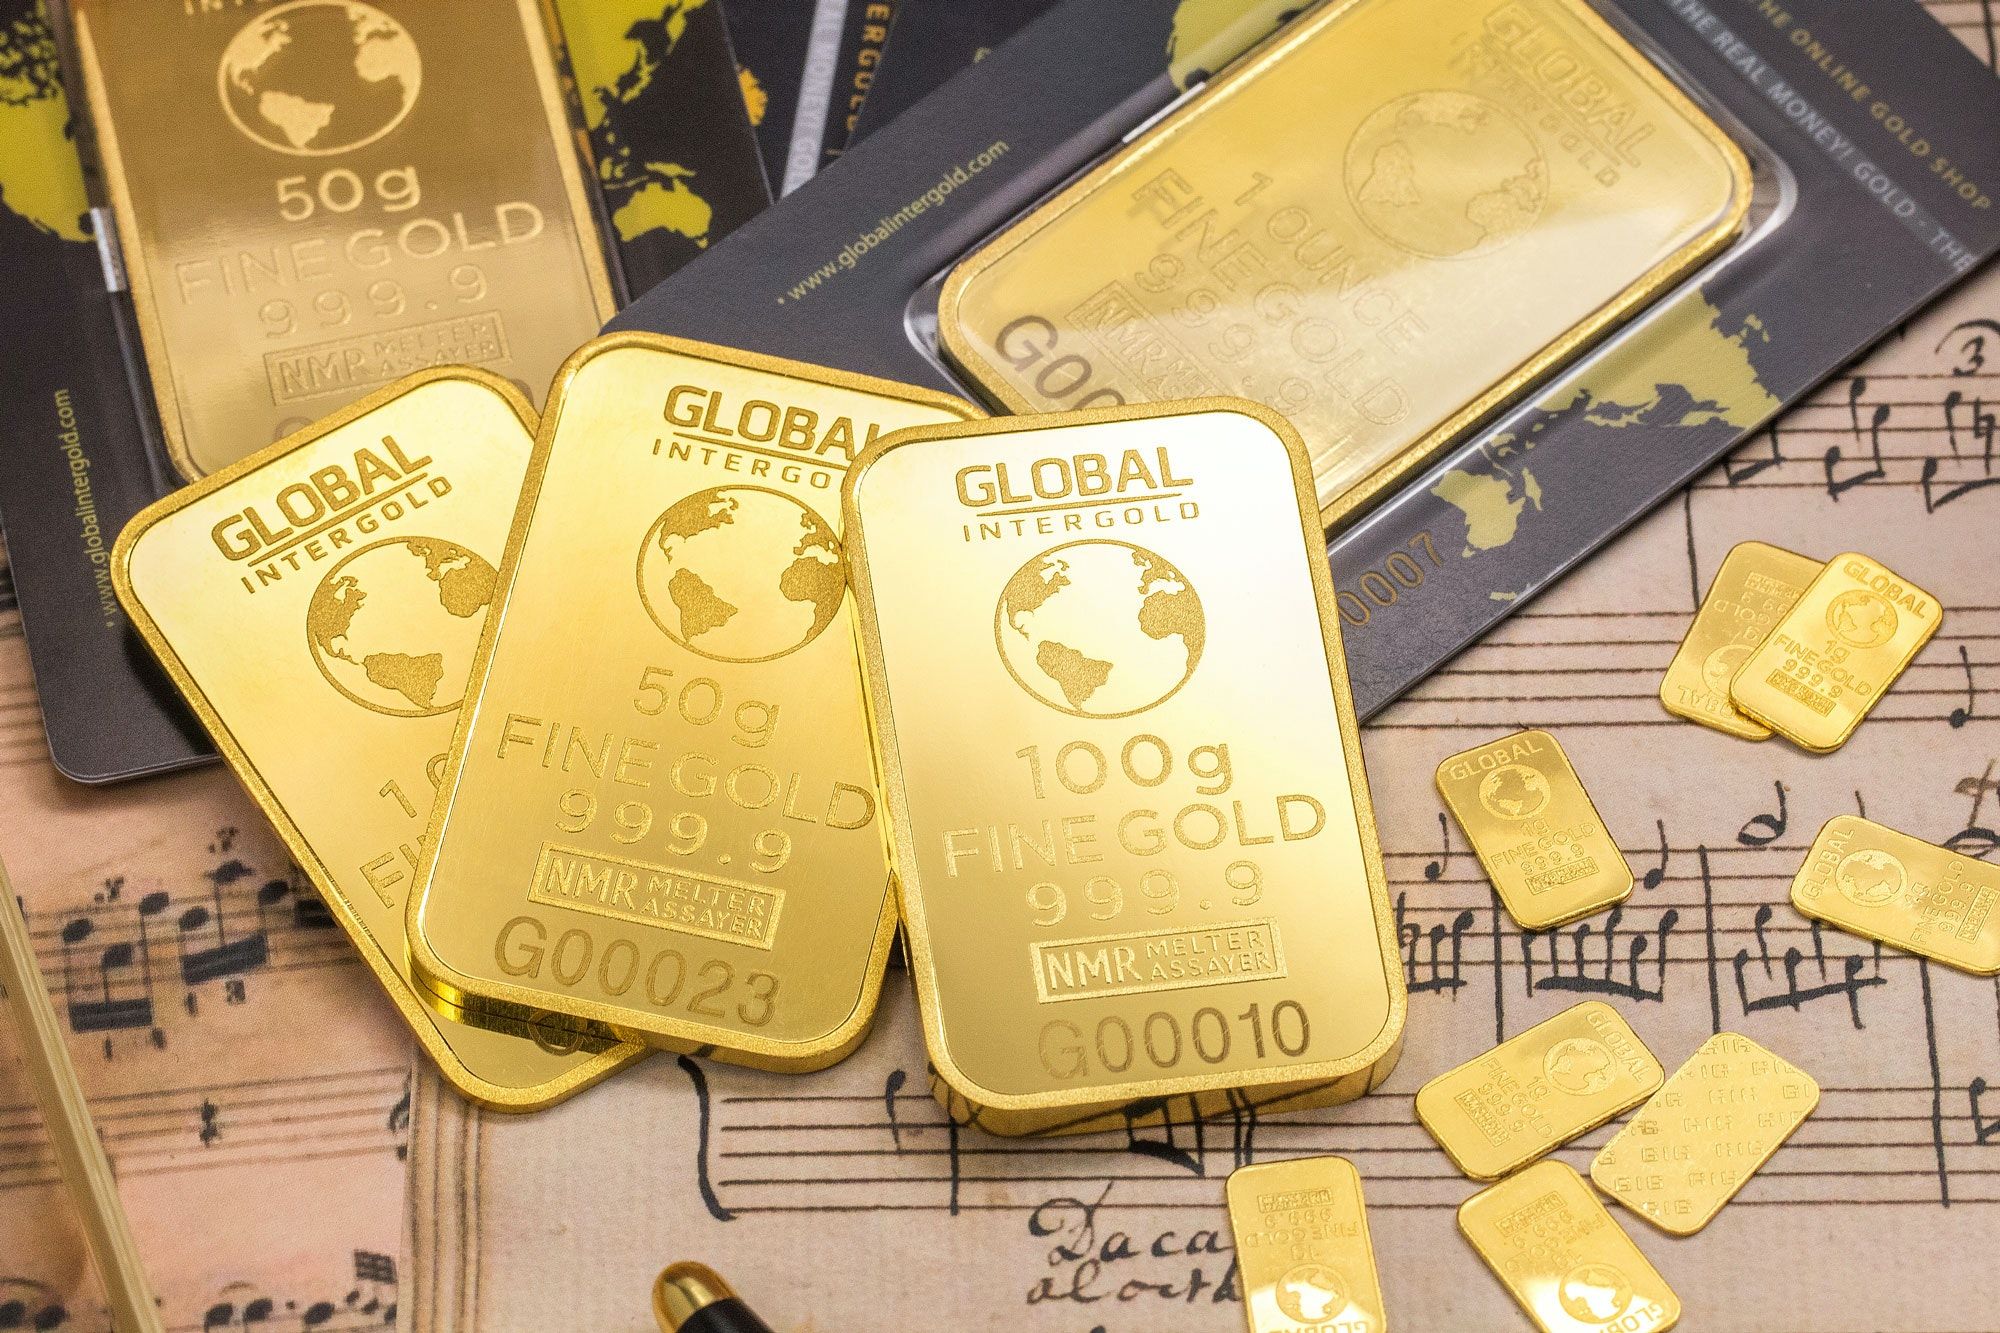 Harga emas di Pegadaian pada Senin, 29 Agustus 2022, Antam dan UBS terpantau stabil